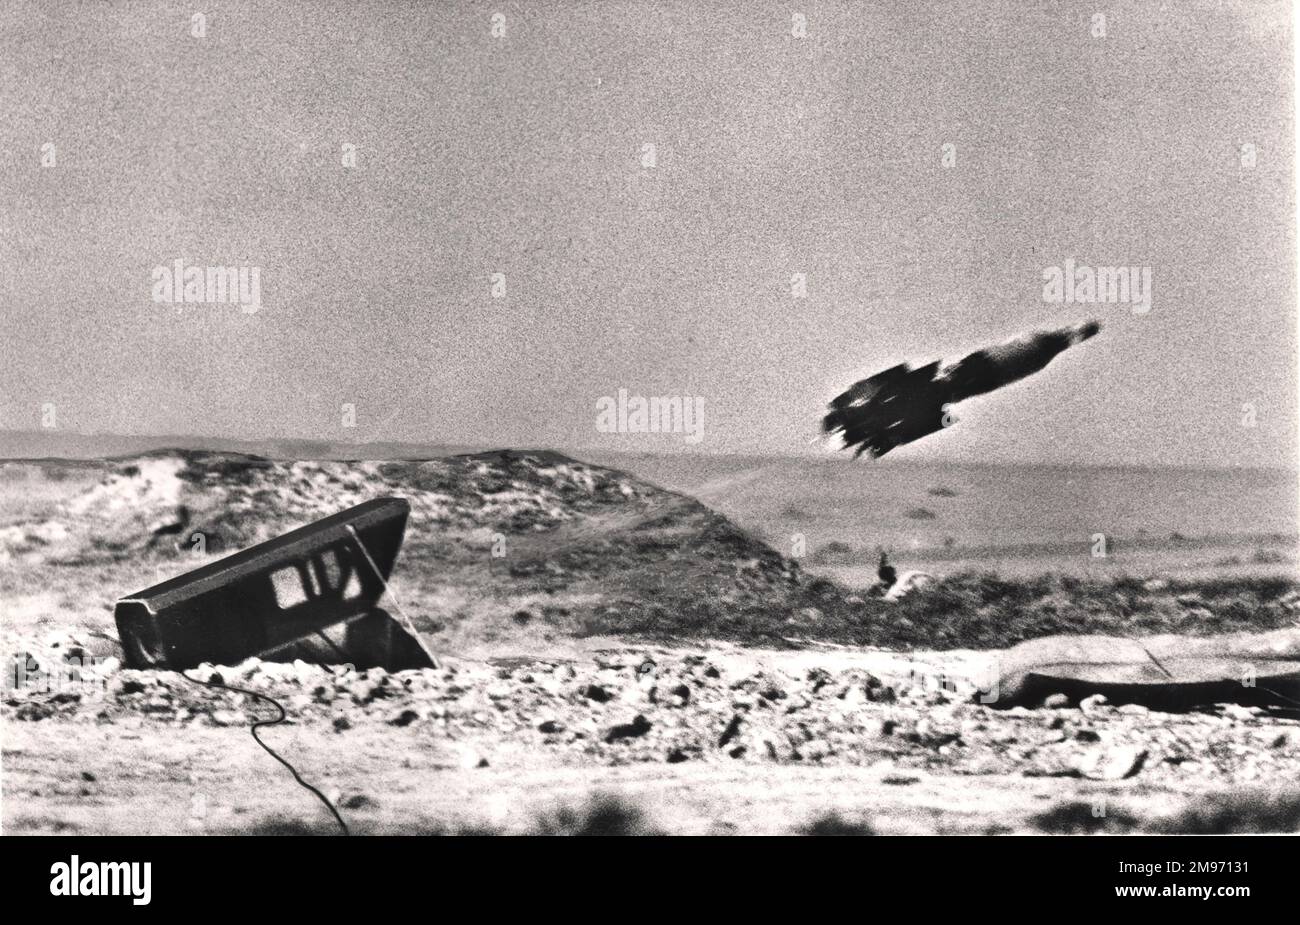 Eine Vickers 891 wachsame Panzerabwehrrakete kurz nach dem Start. Ungefähr 1961. Stockfoto